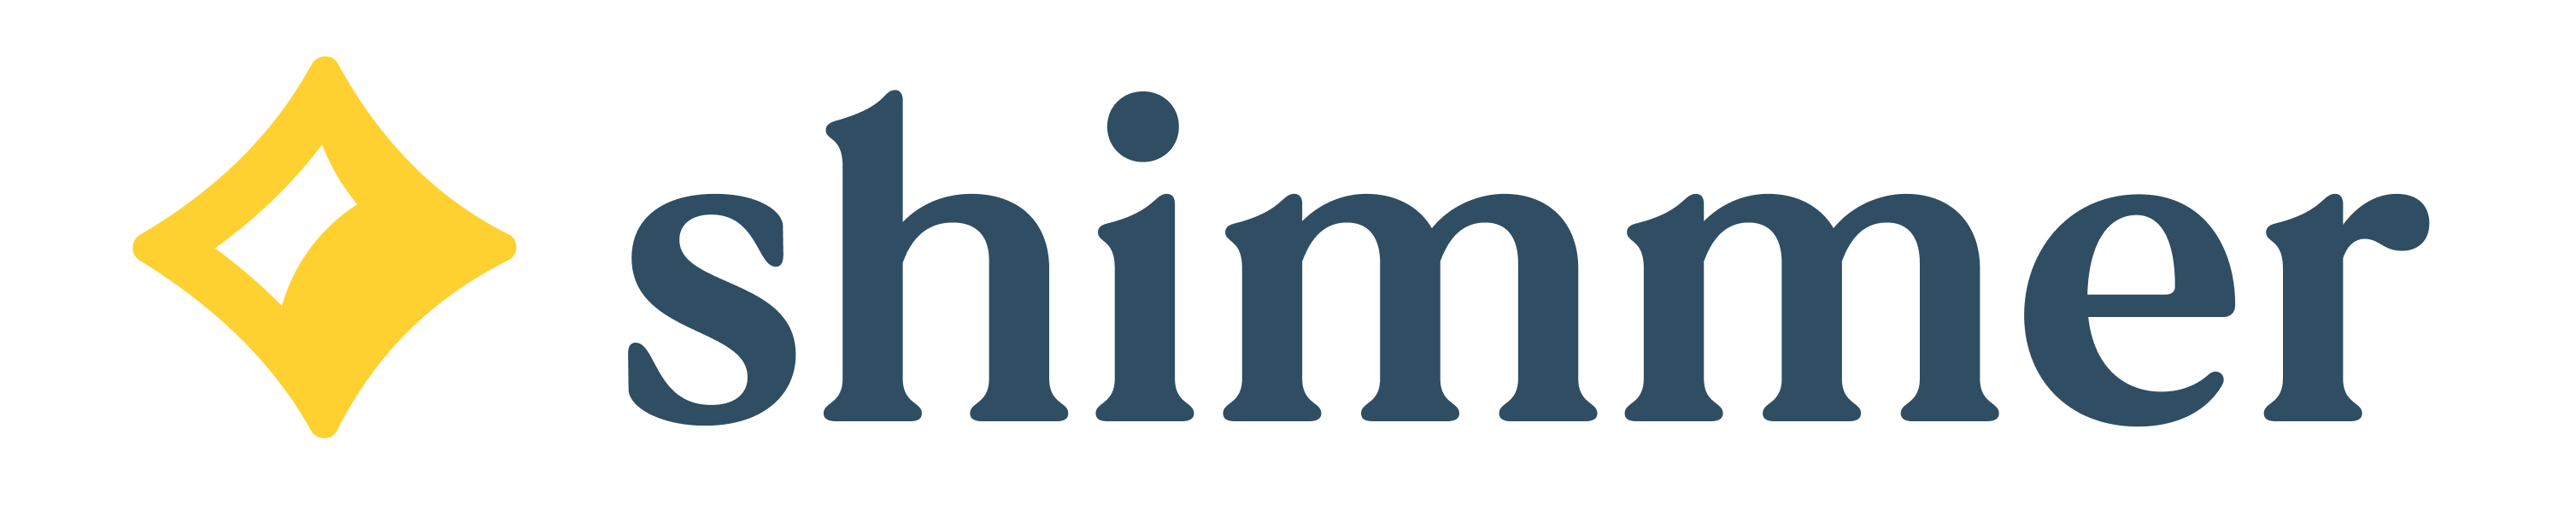 Shimmer logo